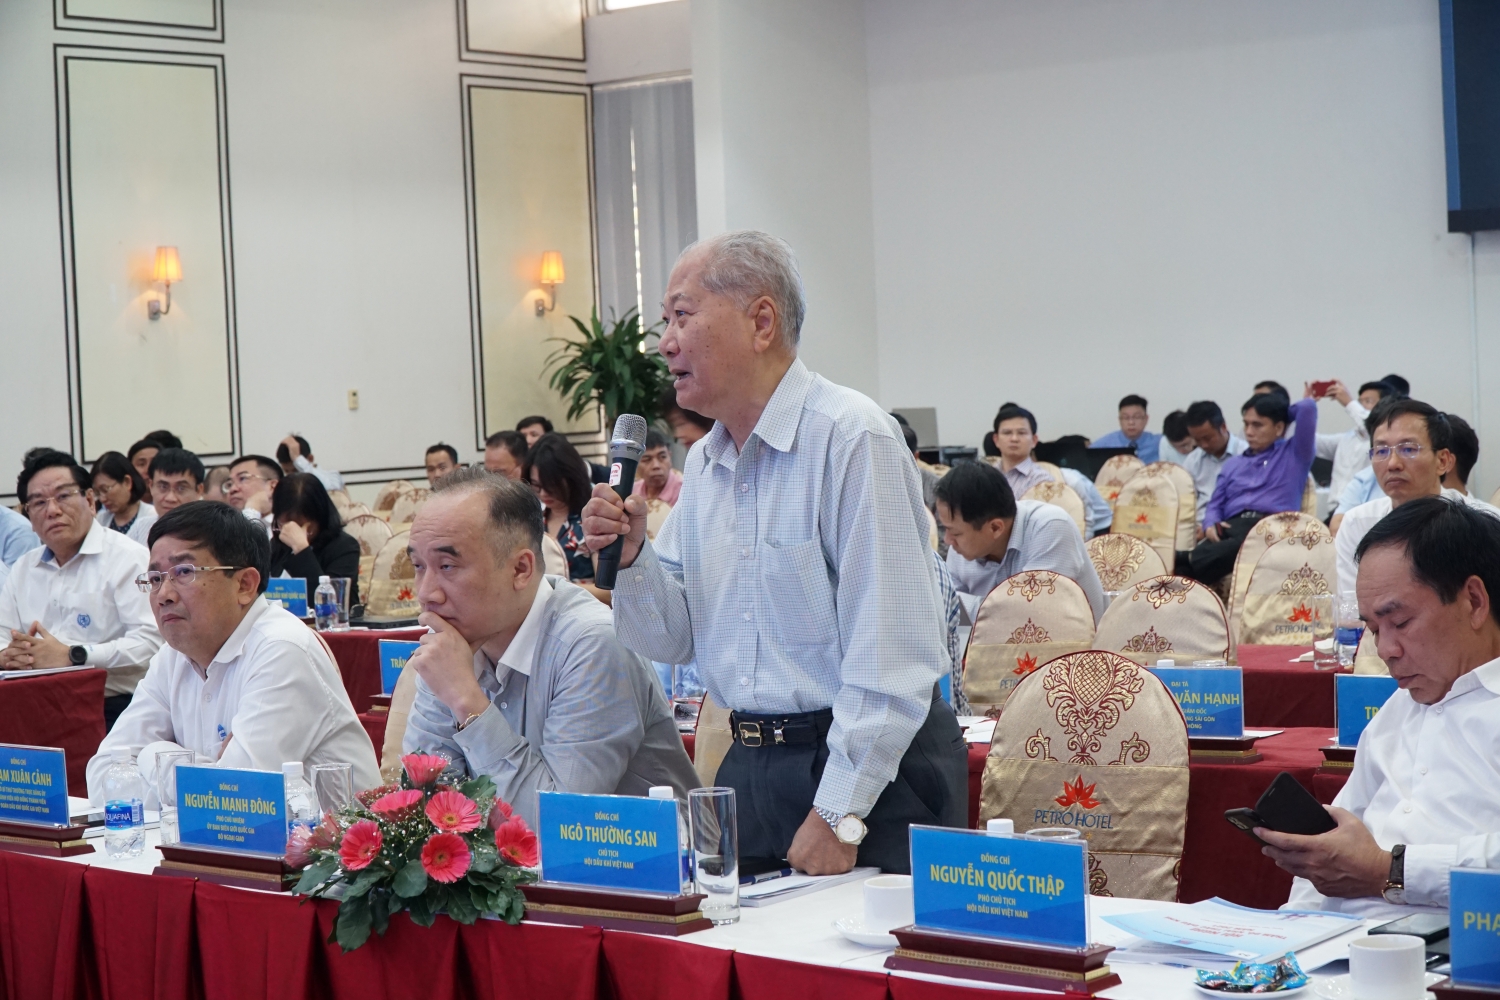 Chủ tịch Hội Dầu khí Việt Nam Ngô Thường San đóng góp ý kiến tại Hội nghị